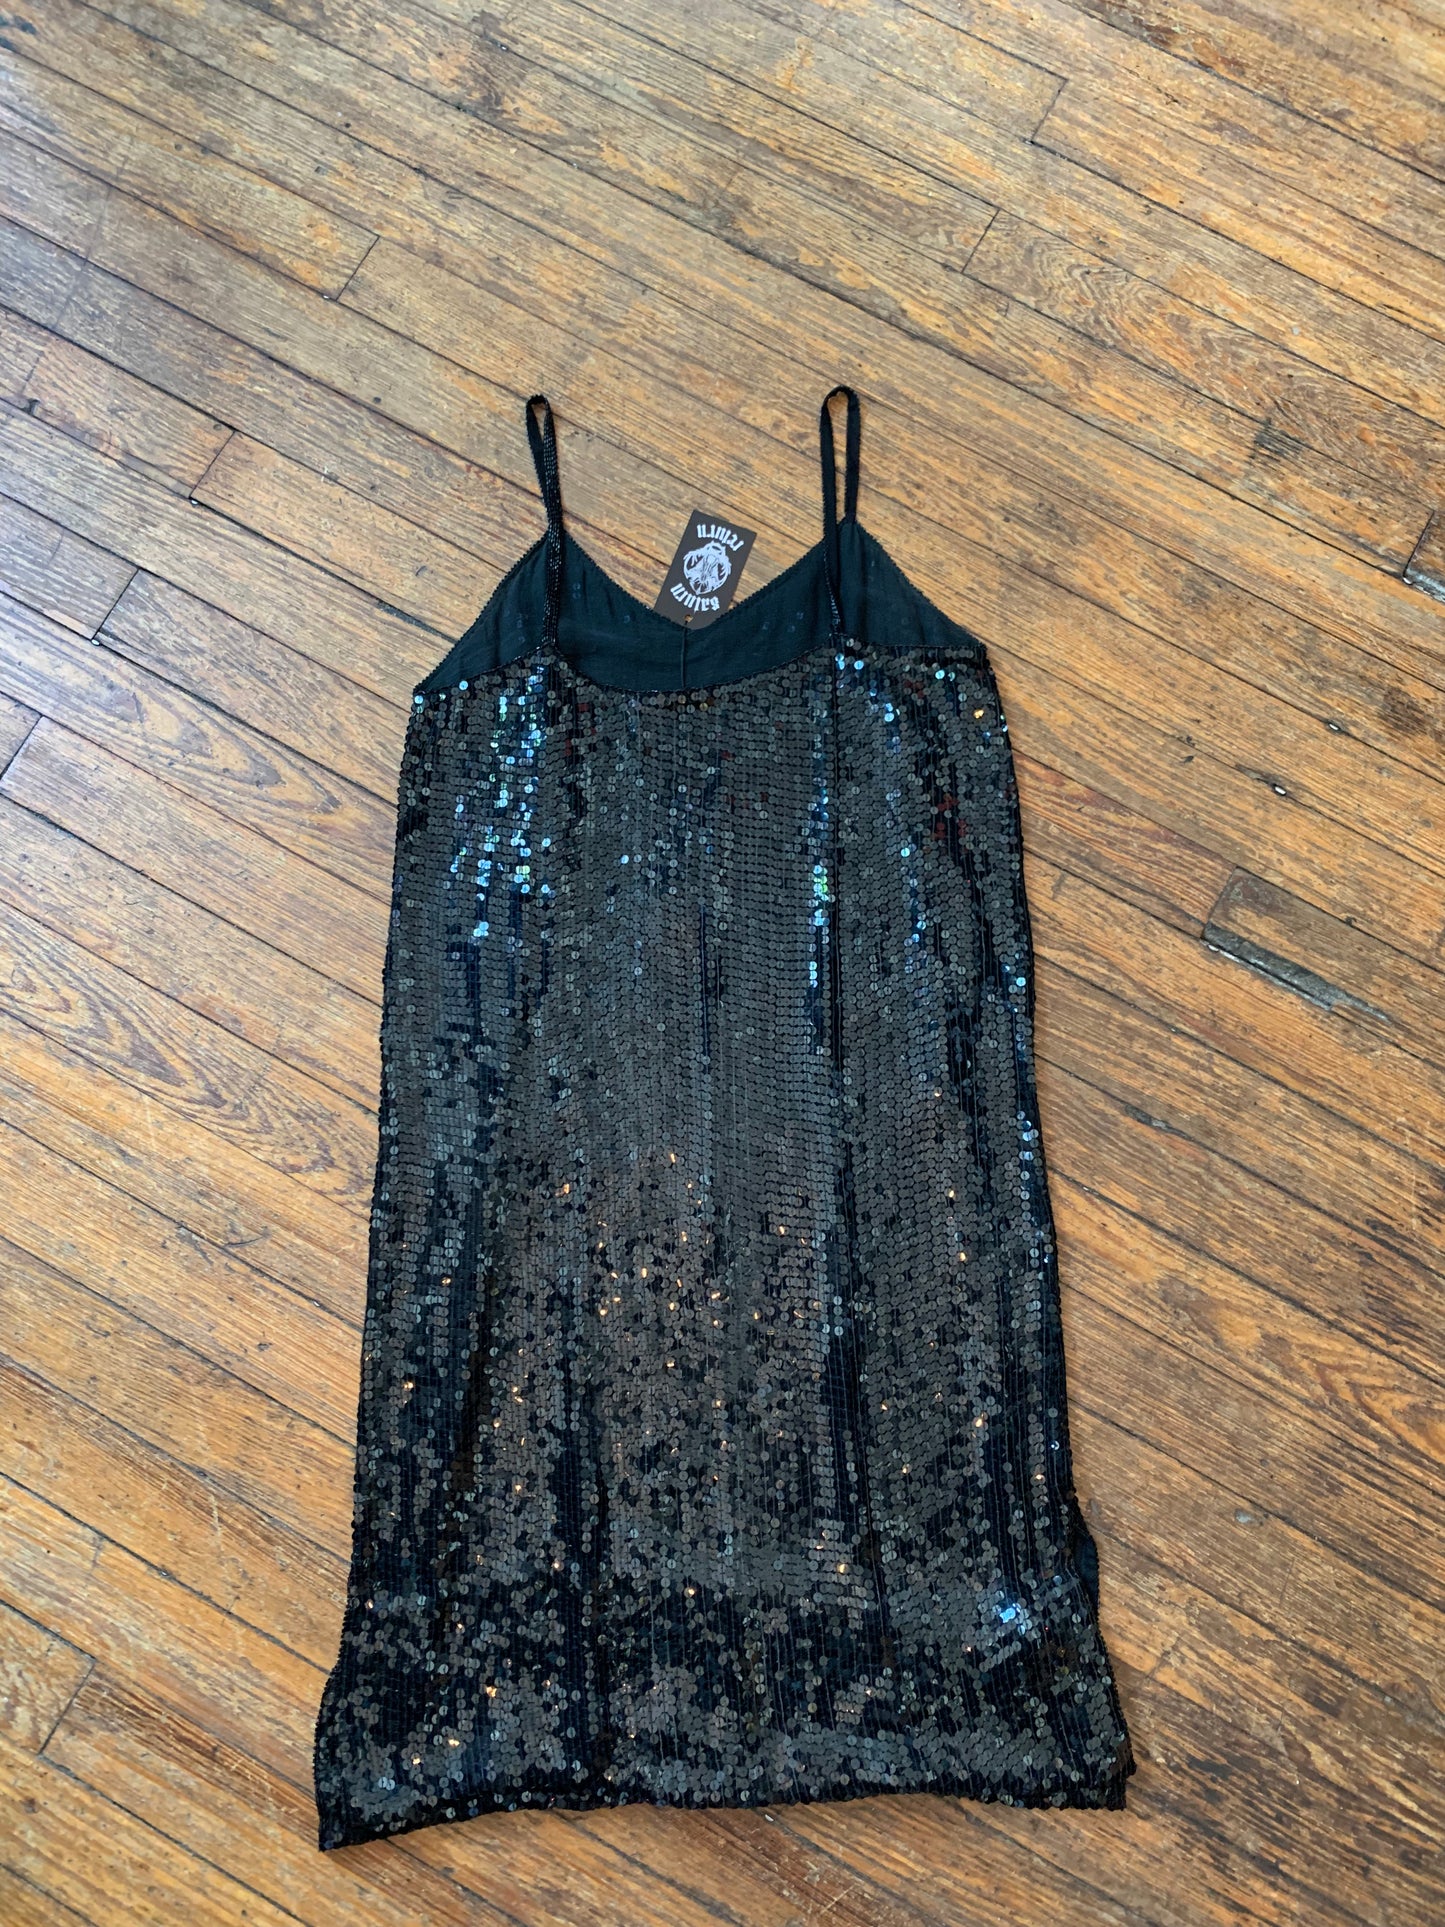 Vintage Dominique Black Sequin Dress